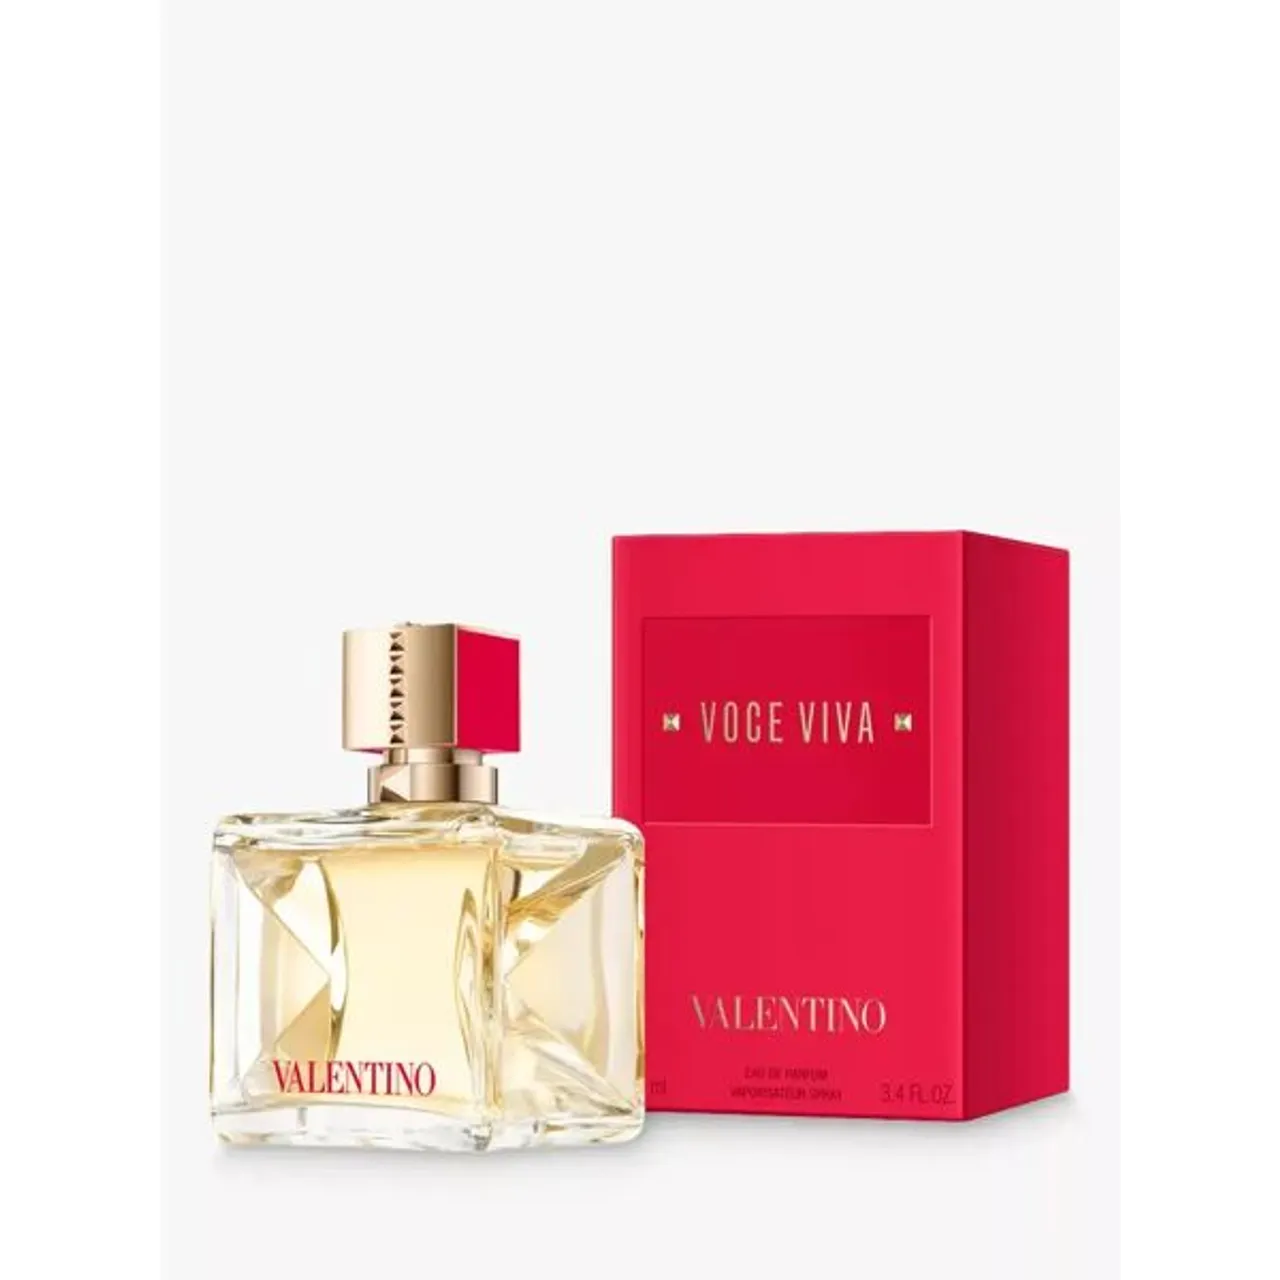 Valentino Voce Viva Eau de Parfum - Female - Size: 100ml